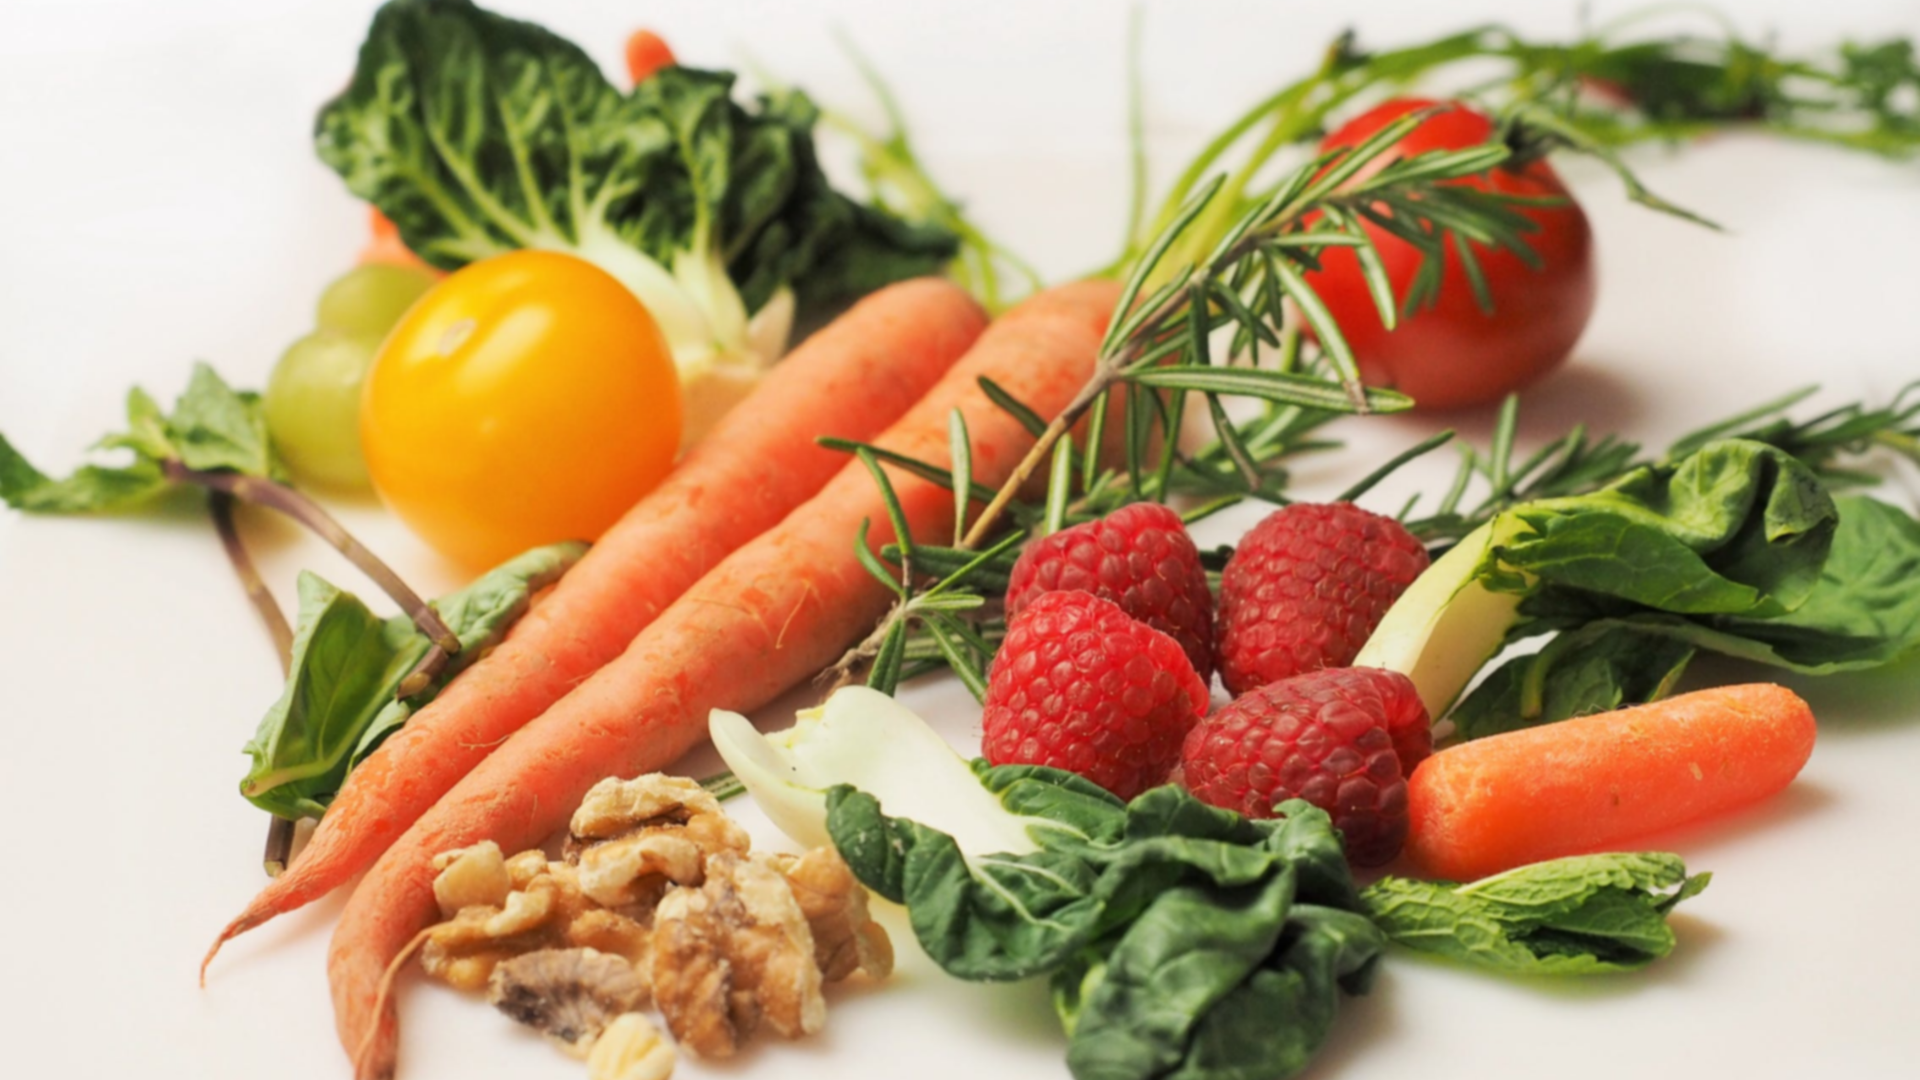 Organic food - raspberries and vegetables